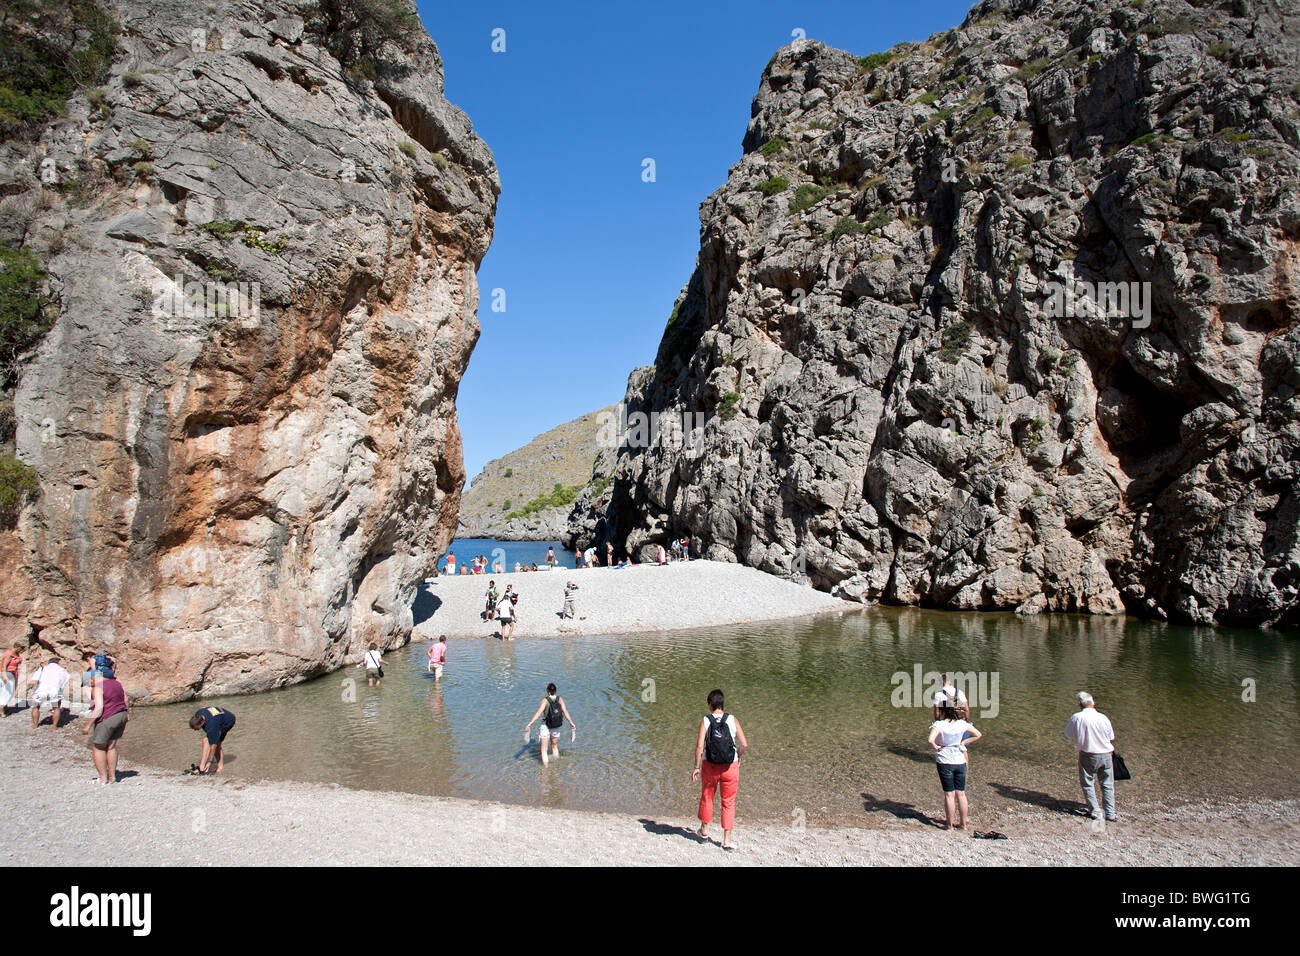 Les touristes visitant Torrent de Pareis. La Calobra. L'île de Majorque. Espagne Banque D'Images